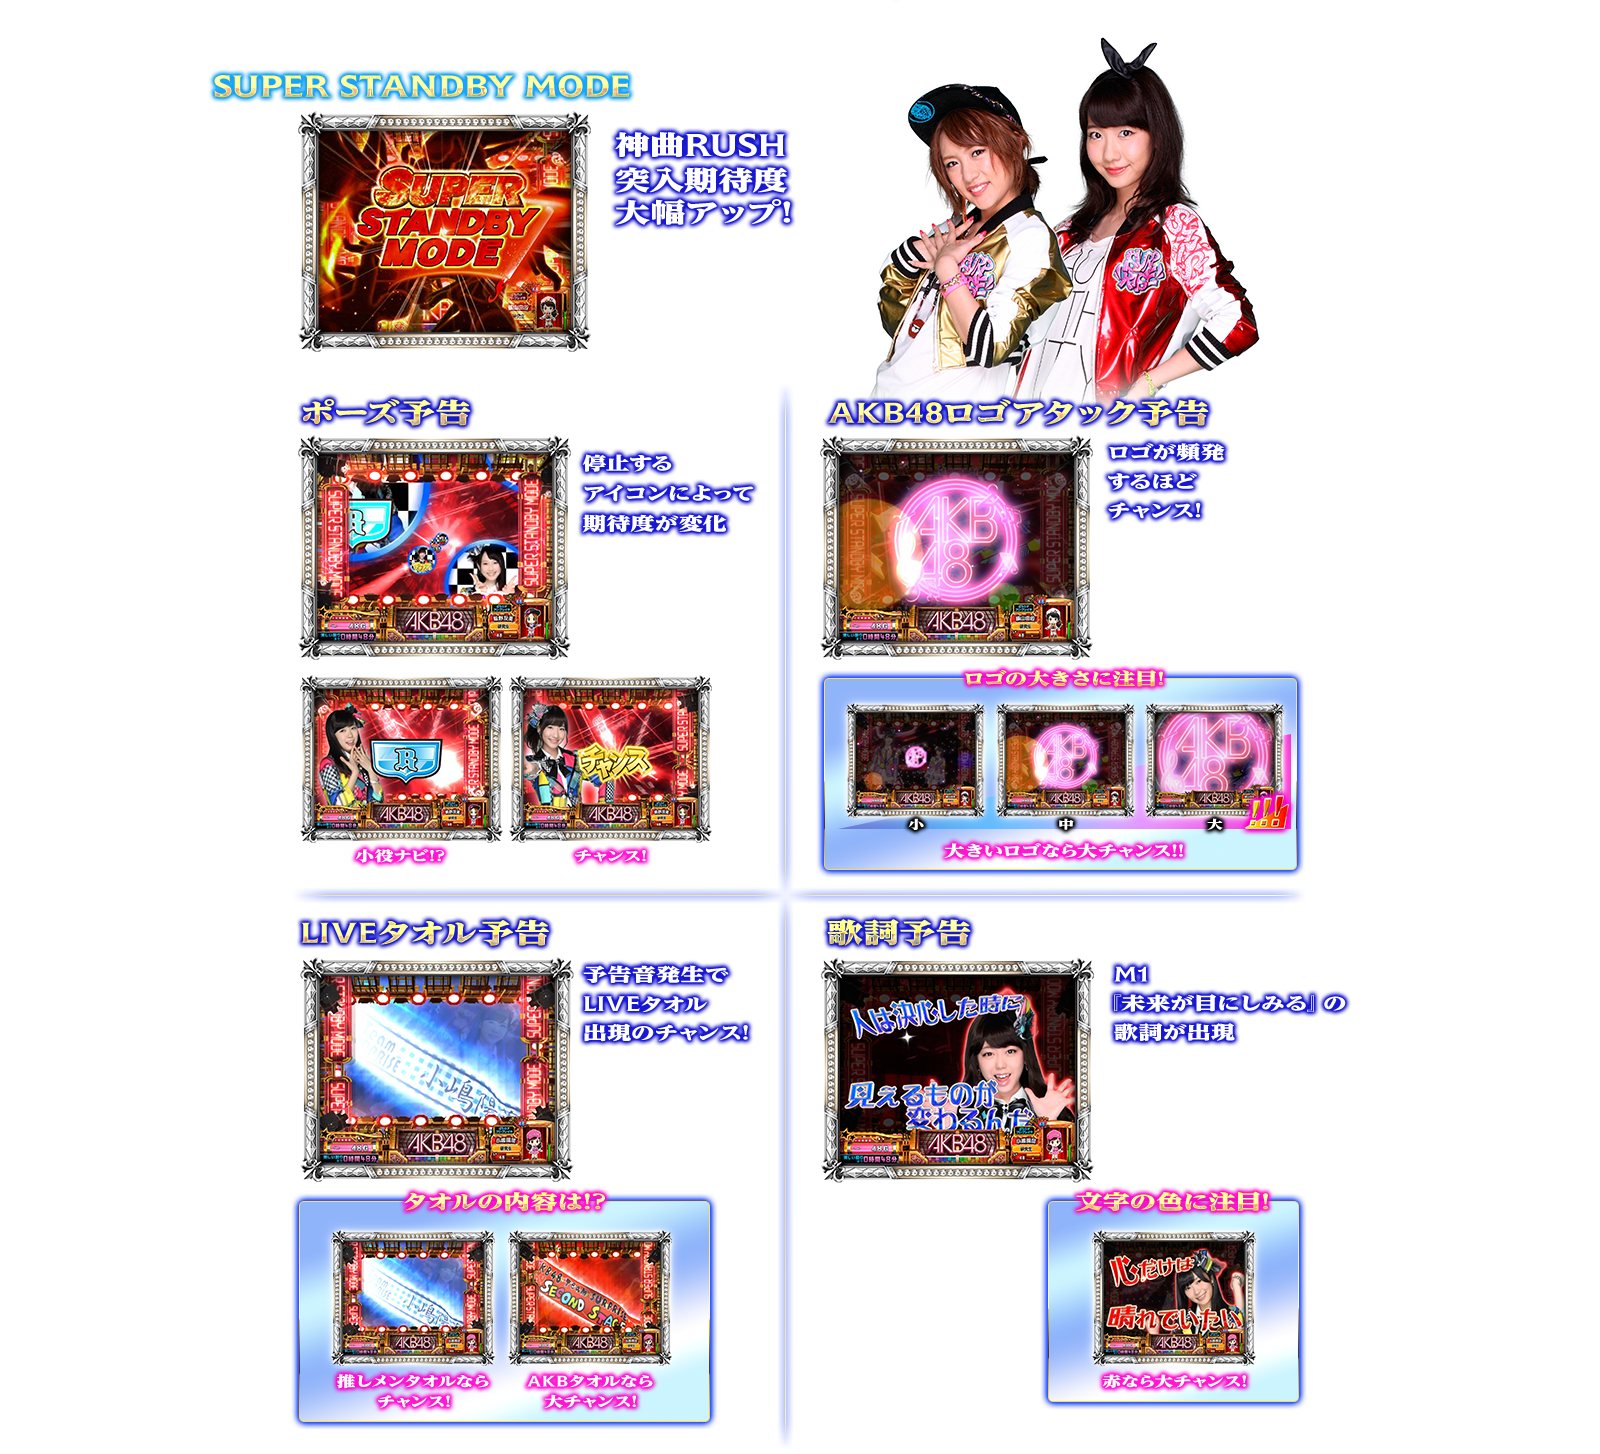 ぱちスロAKB48 バラの儀式の演出紹介。通常時の神曲RUSH前兆ゾーンです。AKB48ファン、スロット初心者、ヘビーユーザーまで誰もが楽しめるDDスペックで登場!!